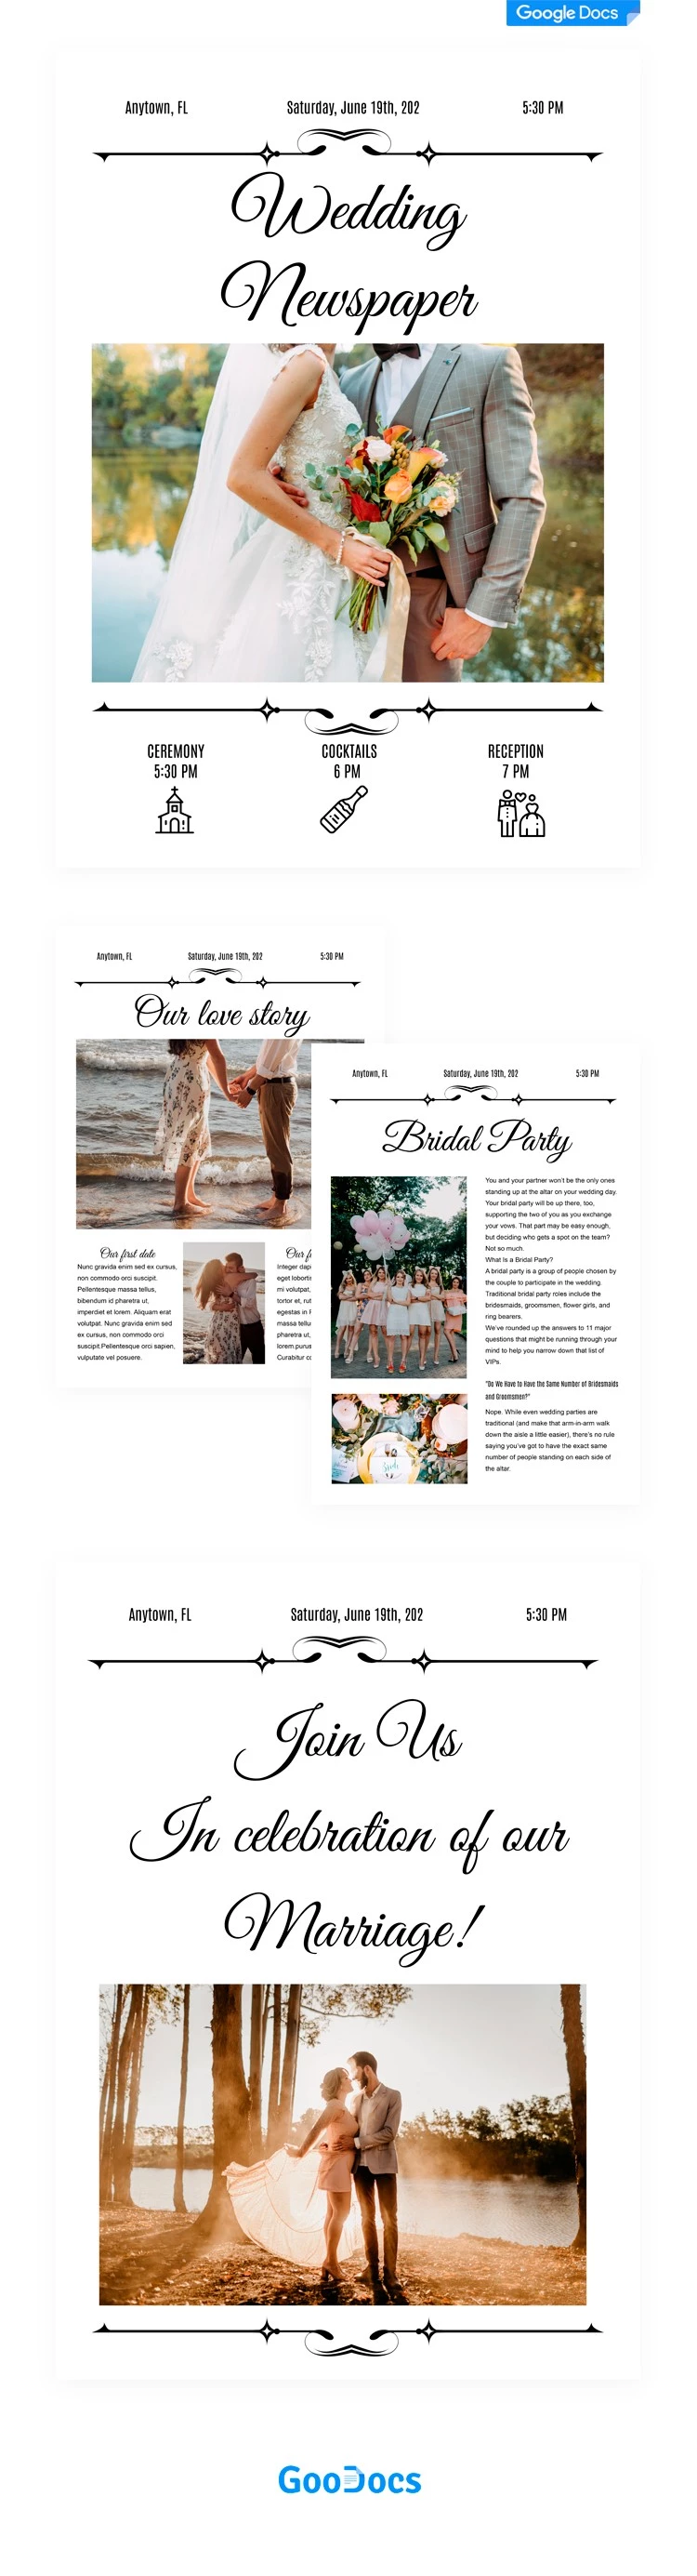 Jornal do Dia do Casamento - free Google Docs Template - 10062024